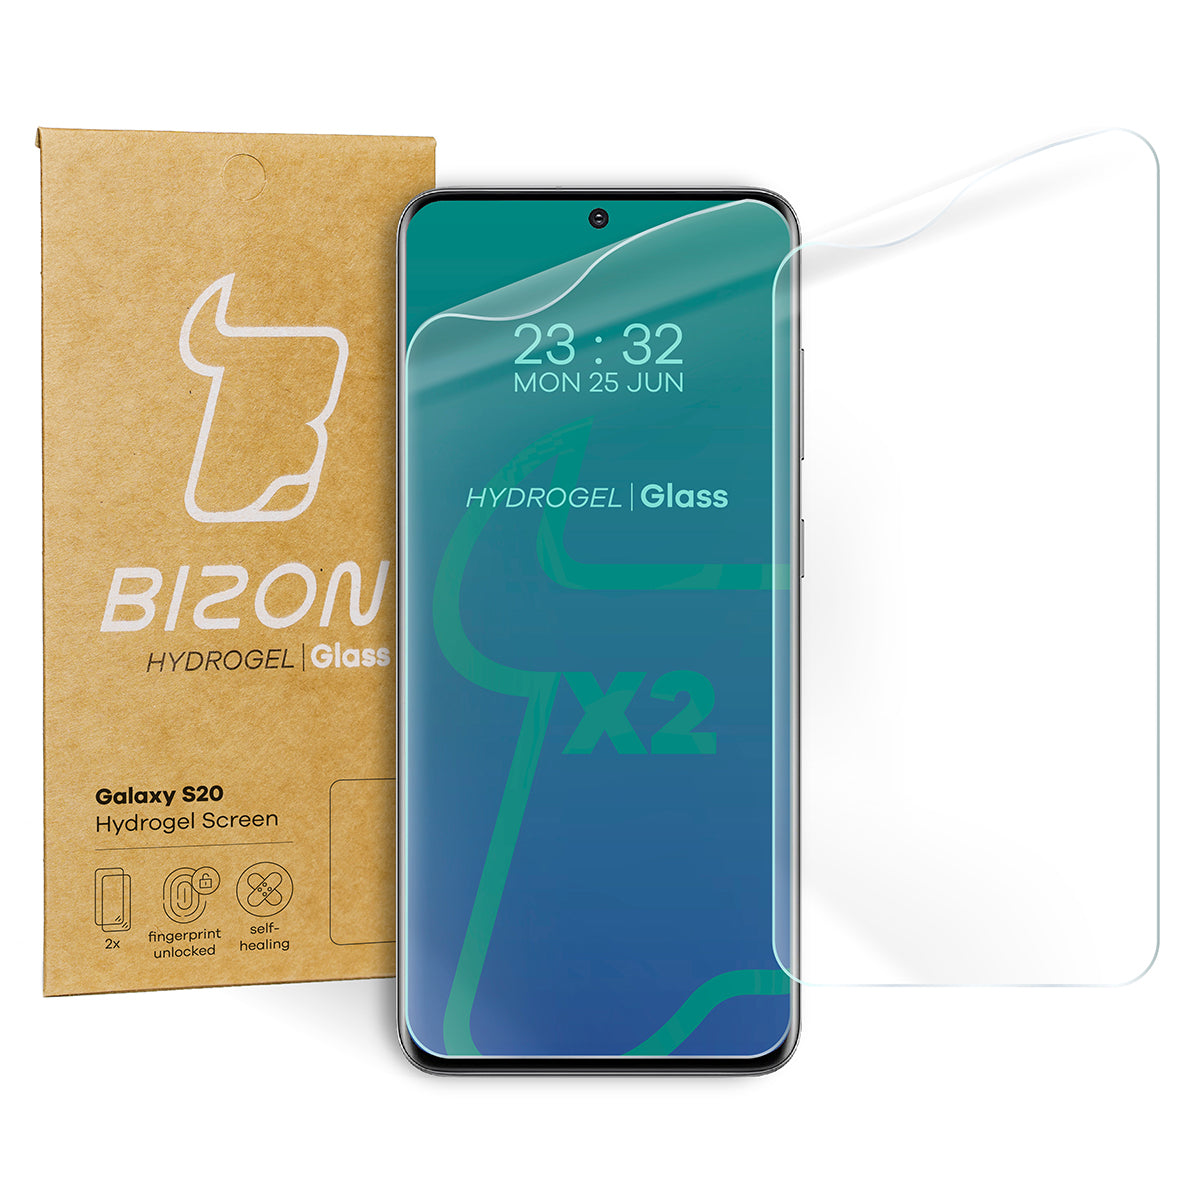 Hydrogel Folie für den Bildschirm Bizon Glass, Galaxy S20, 2 Stück